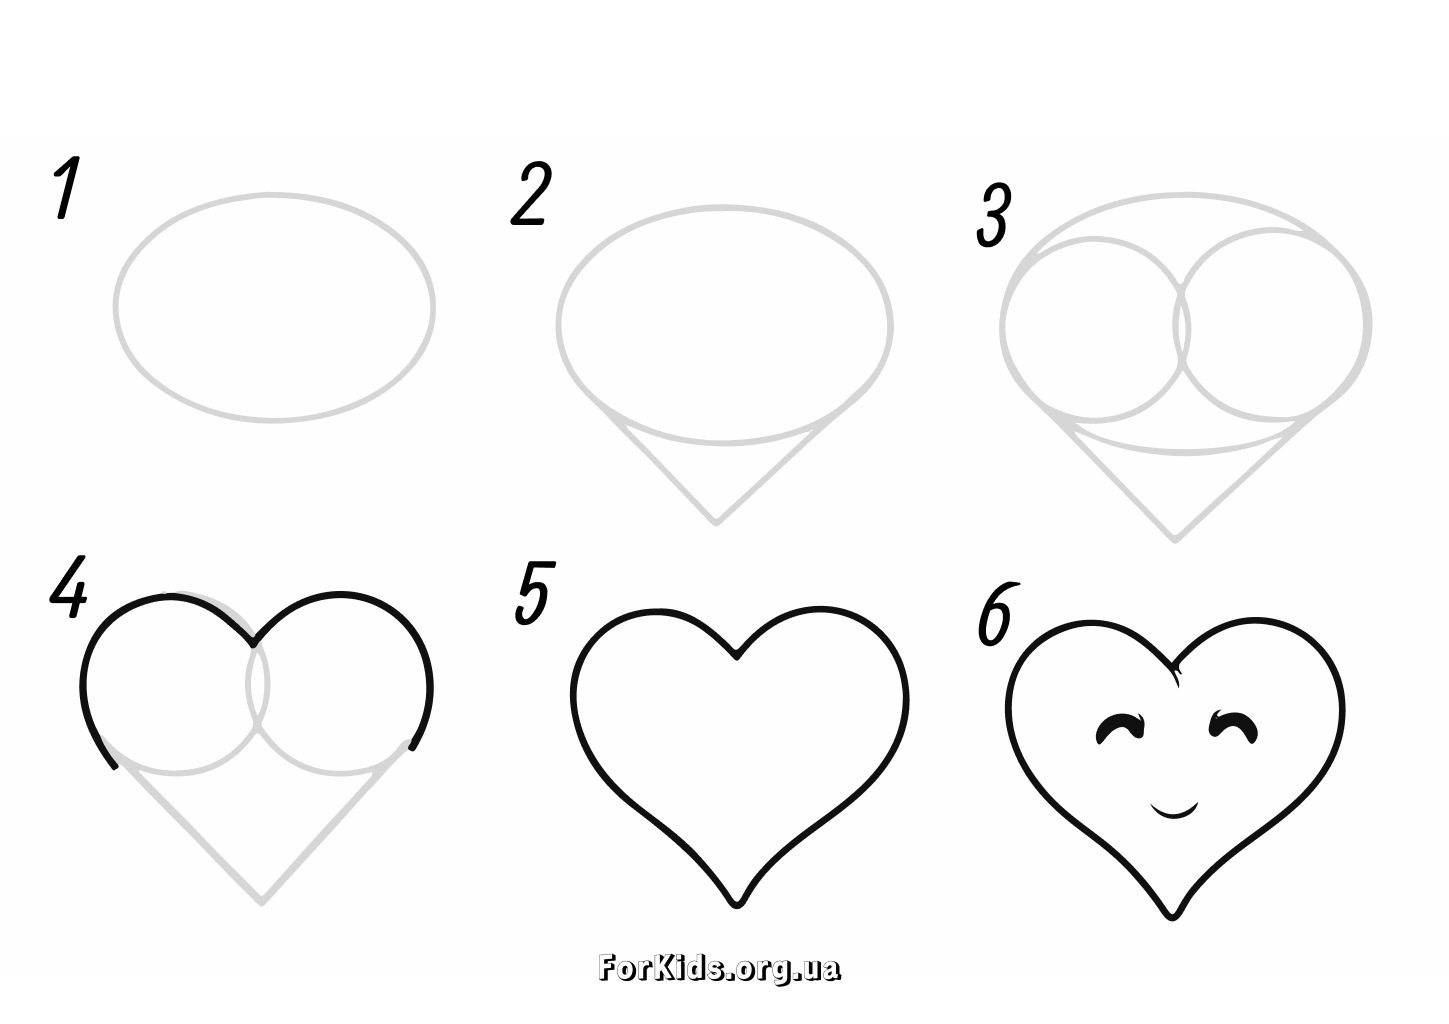 Як намалювати сердечко за 6 кроків